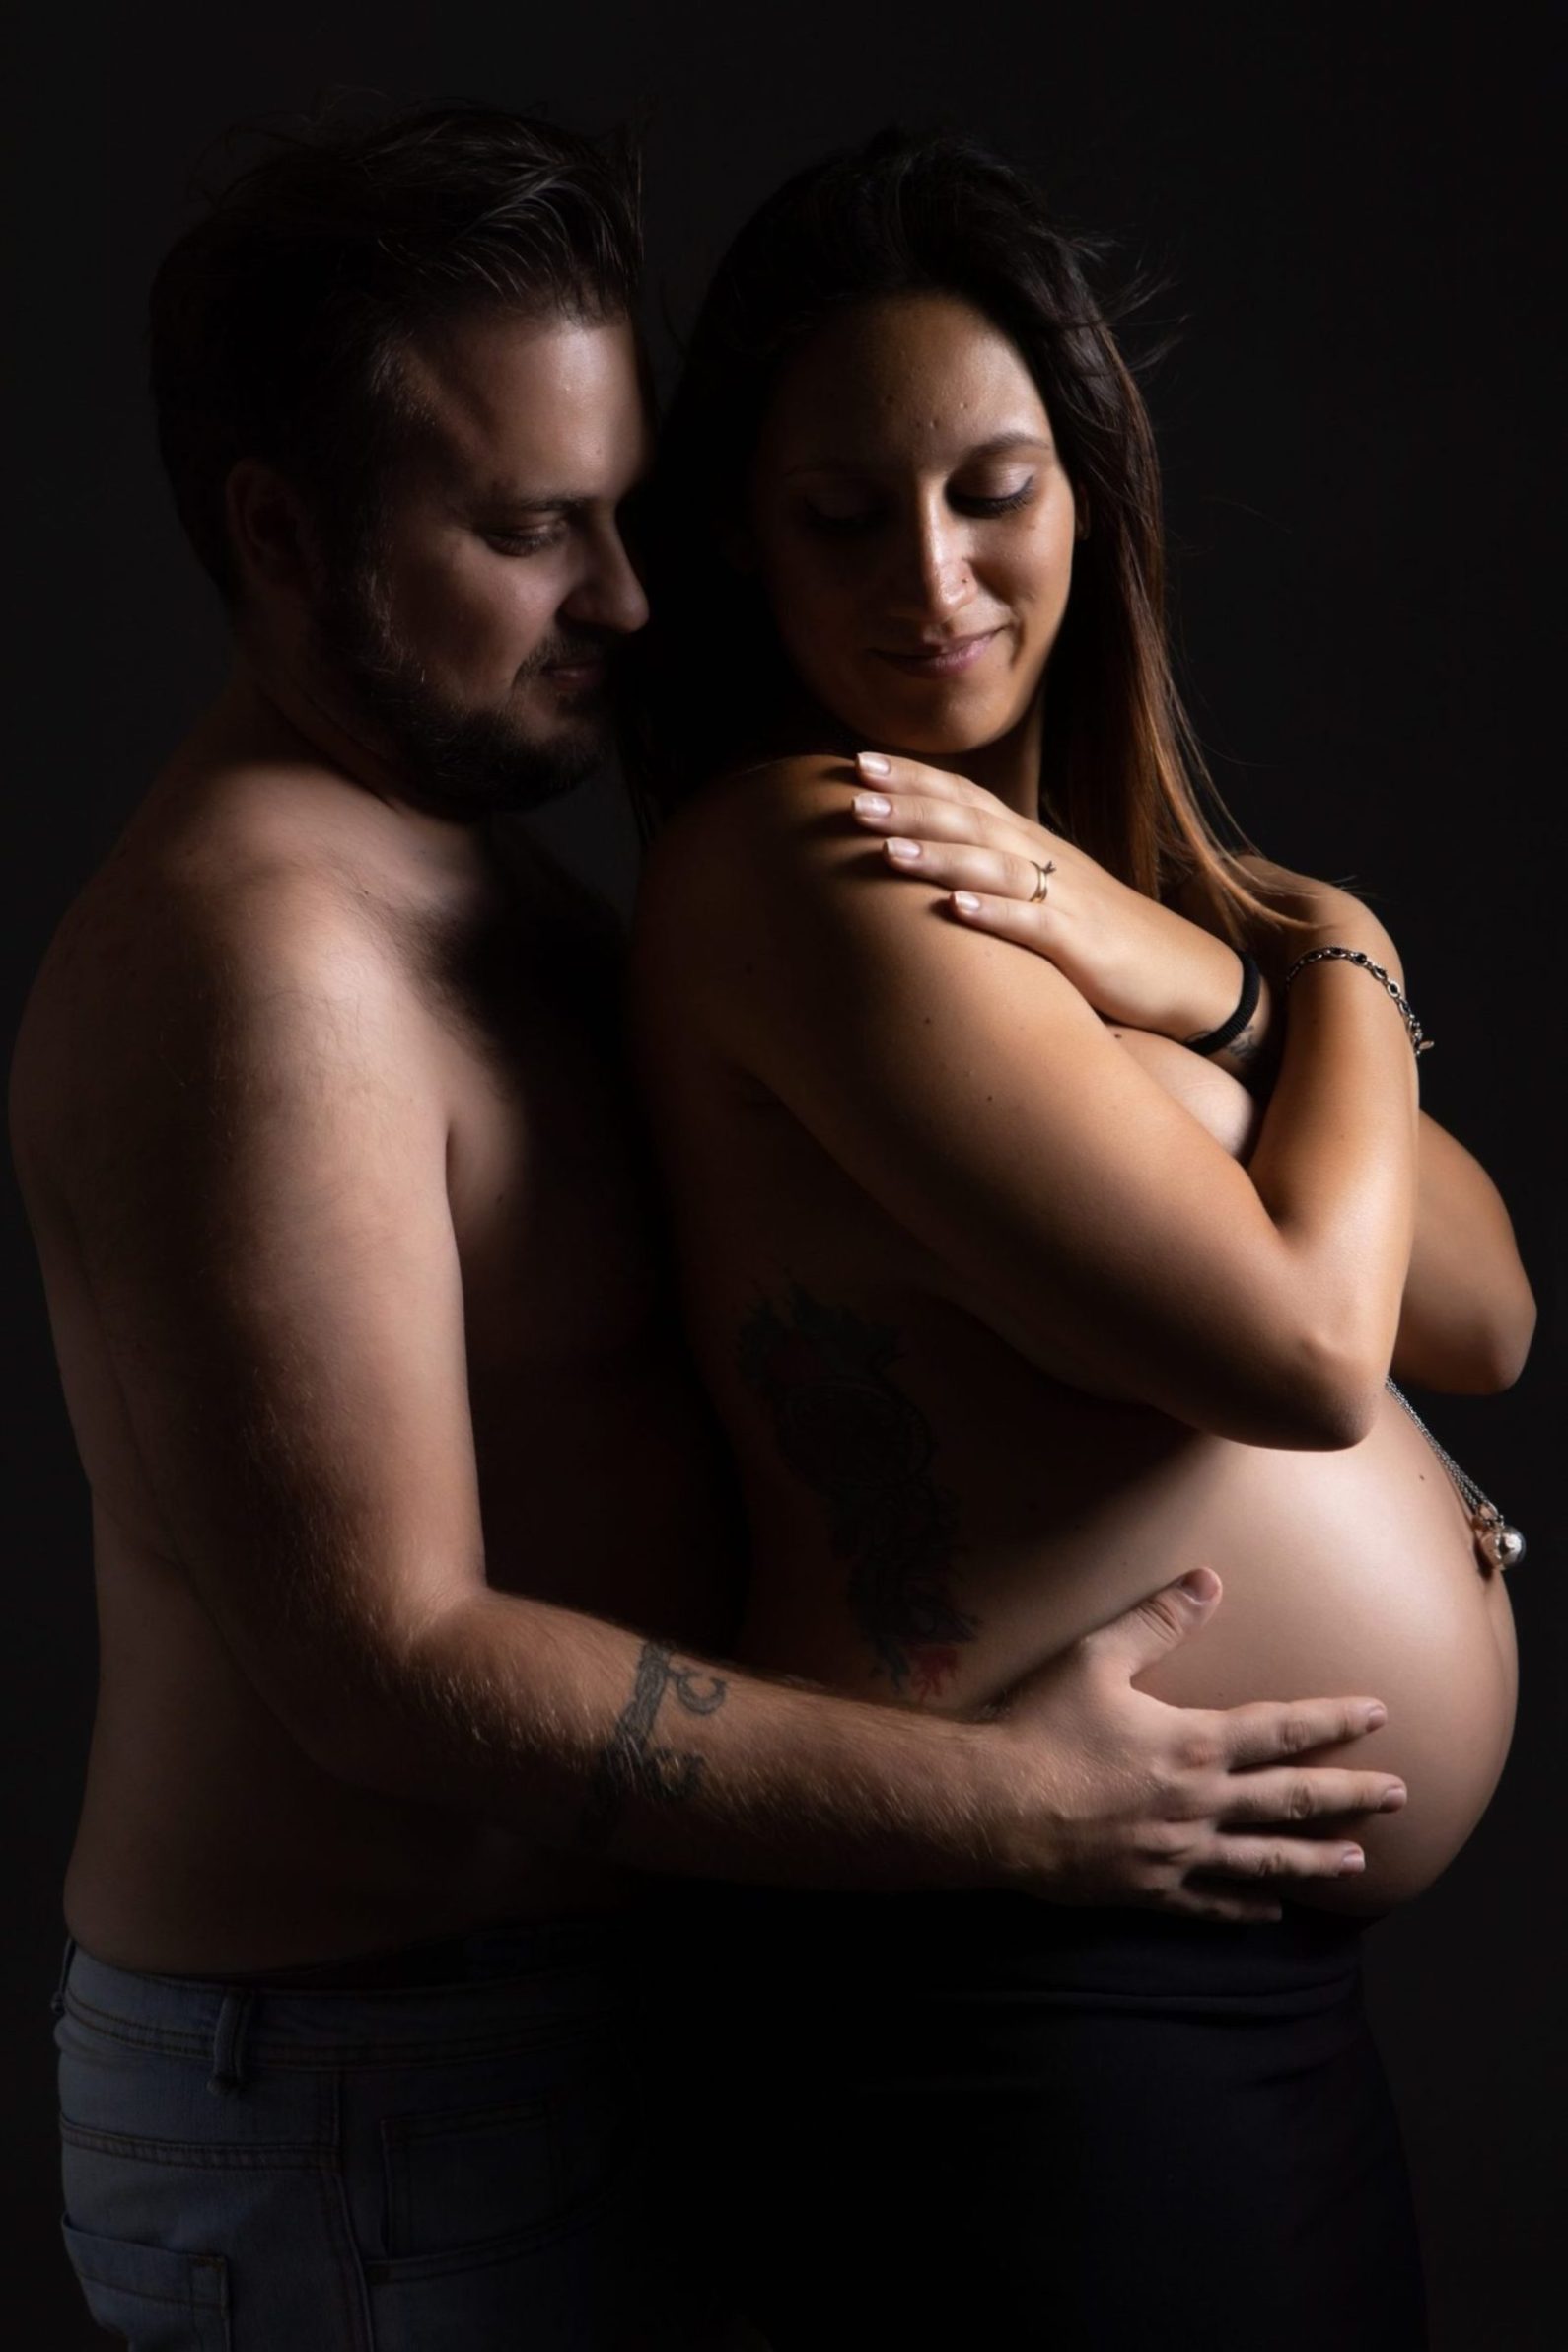 fotografia pancia donna incinta abbraccio coppia felice gravidanza maternità dolce attesa futura famiglia coppia abbraccio contrasti di luci servizio fotografico maternità